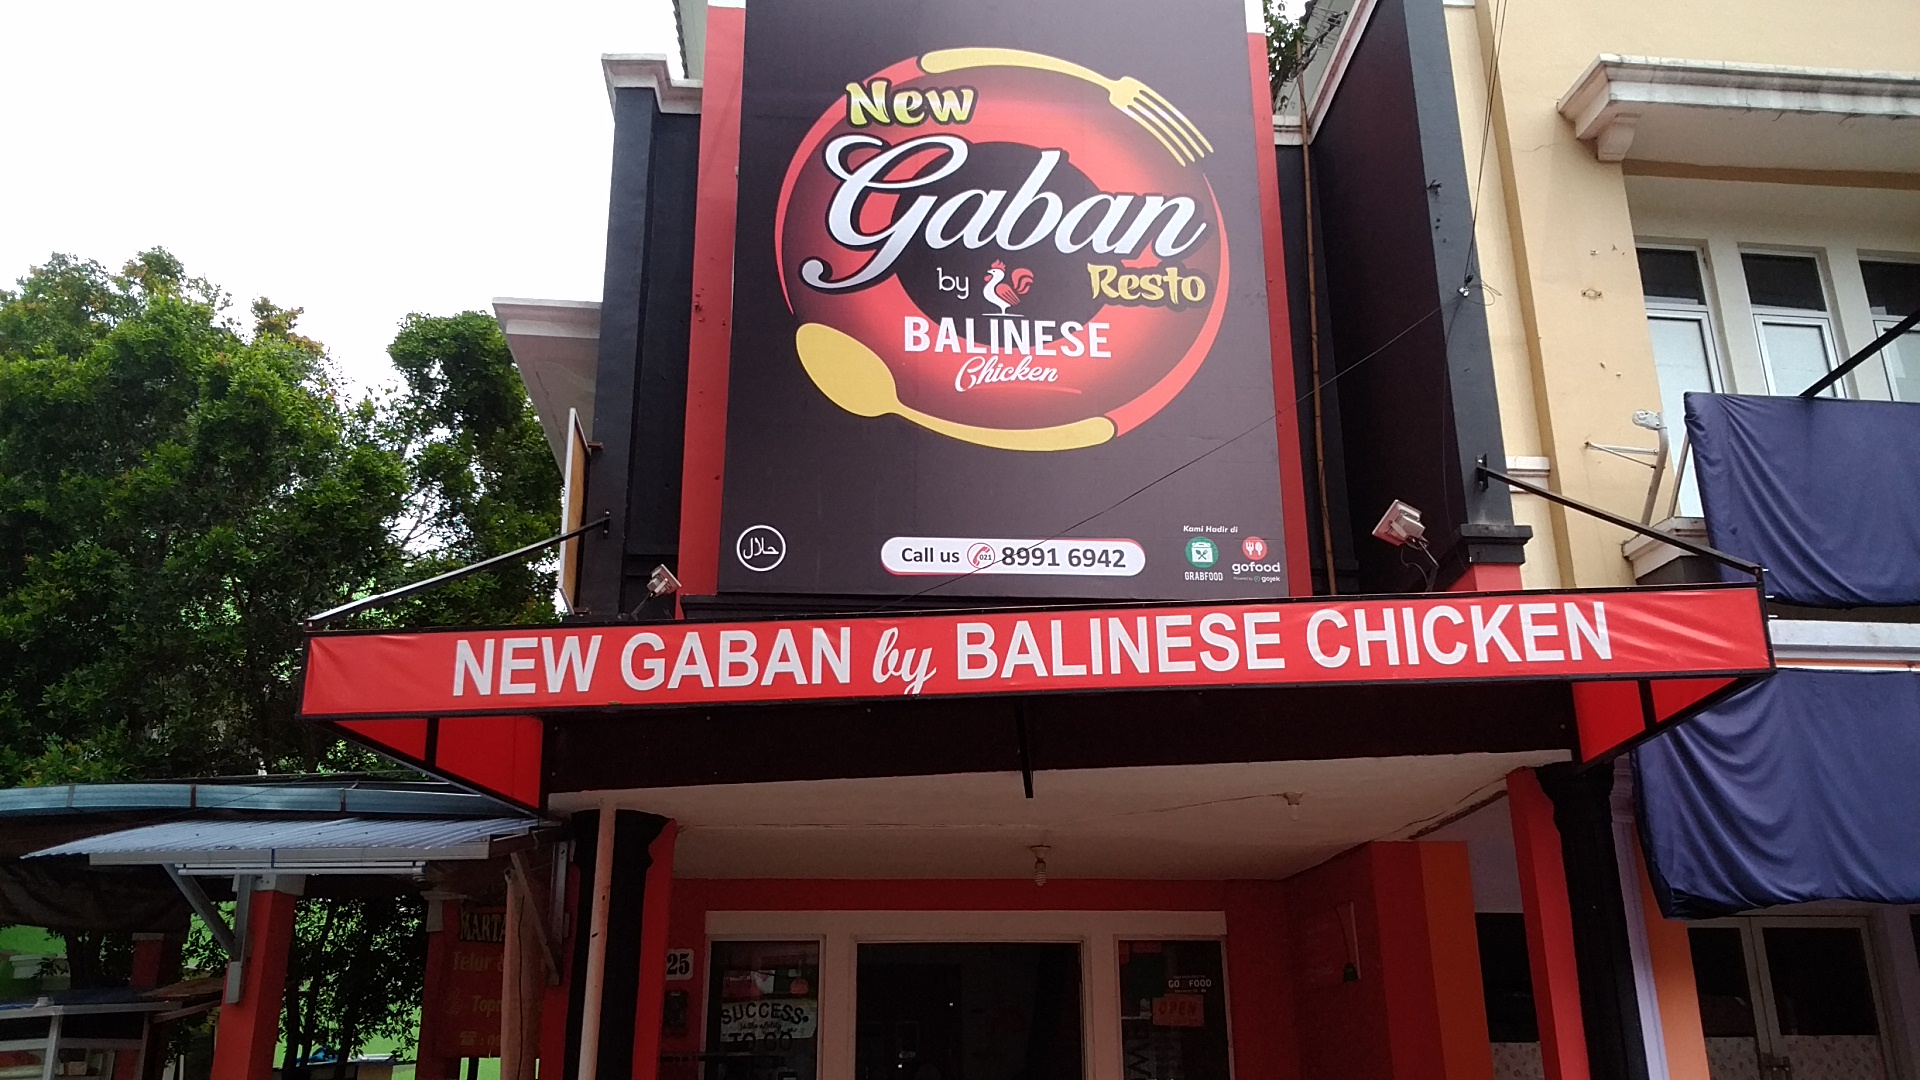 Gambar Balinese Chicken & Gaban Resto